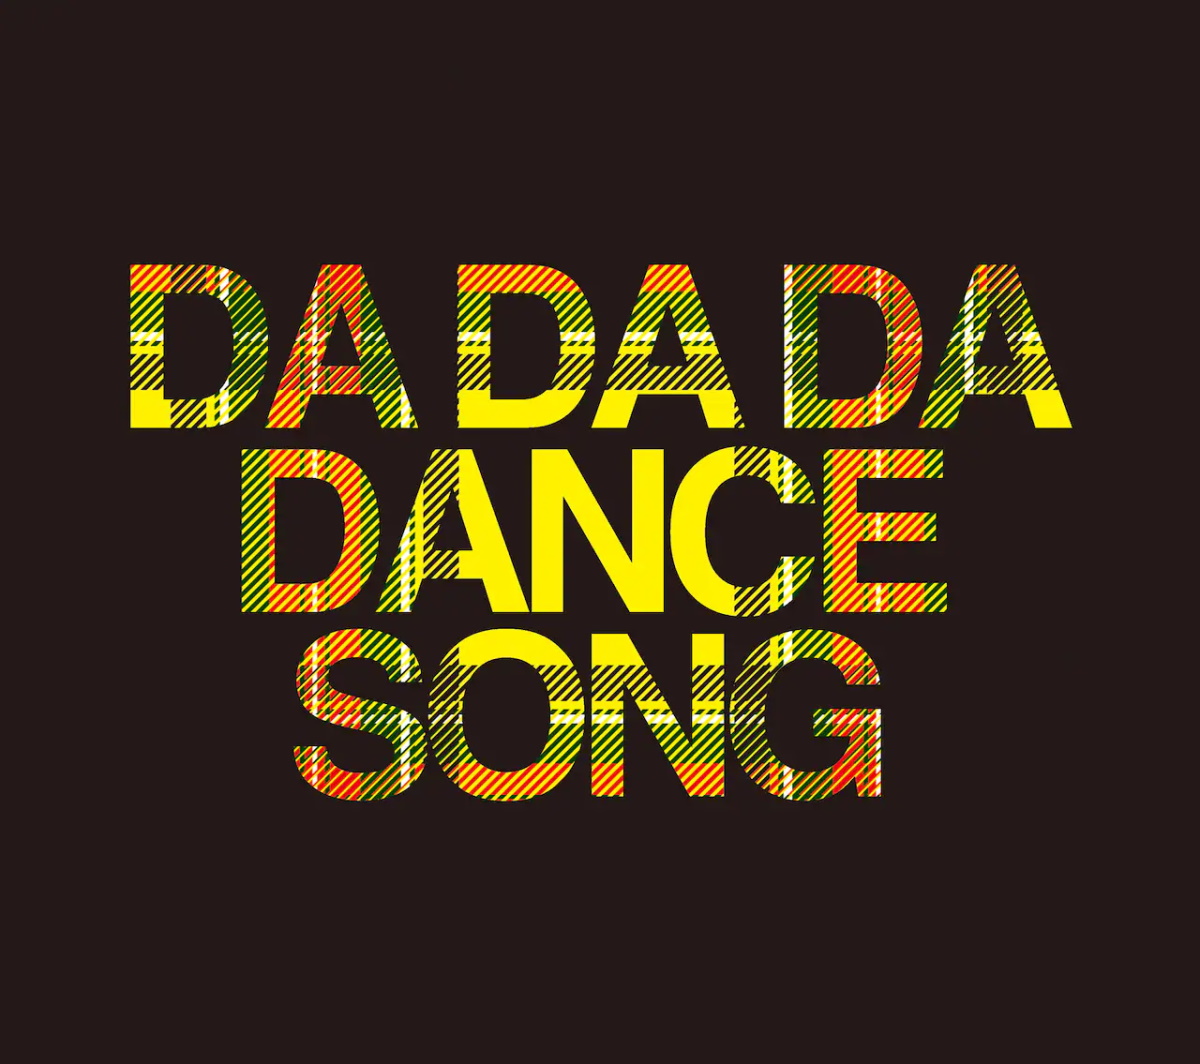 Cover art for『BiS - DA DA DA DANCE SONG』from the release『DA DA DA DANCE SONG